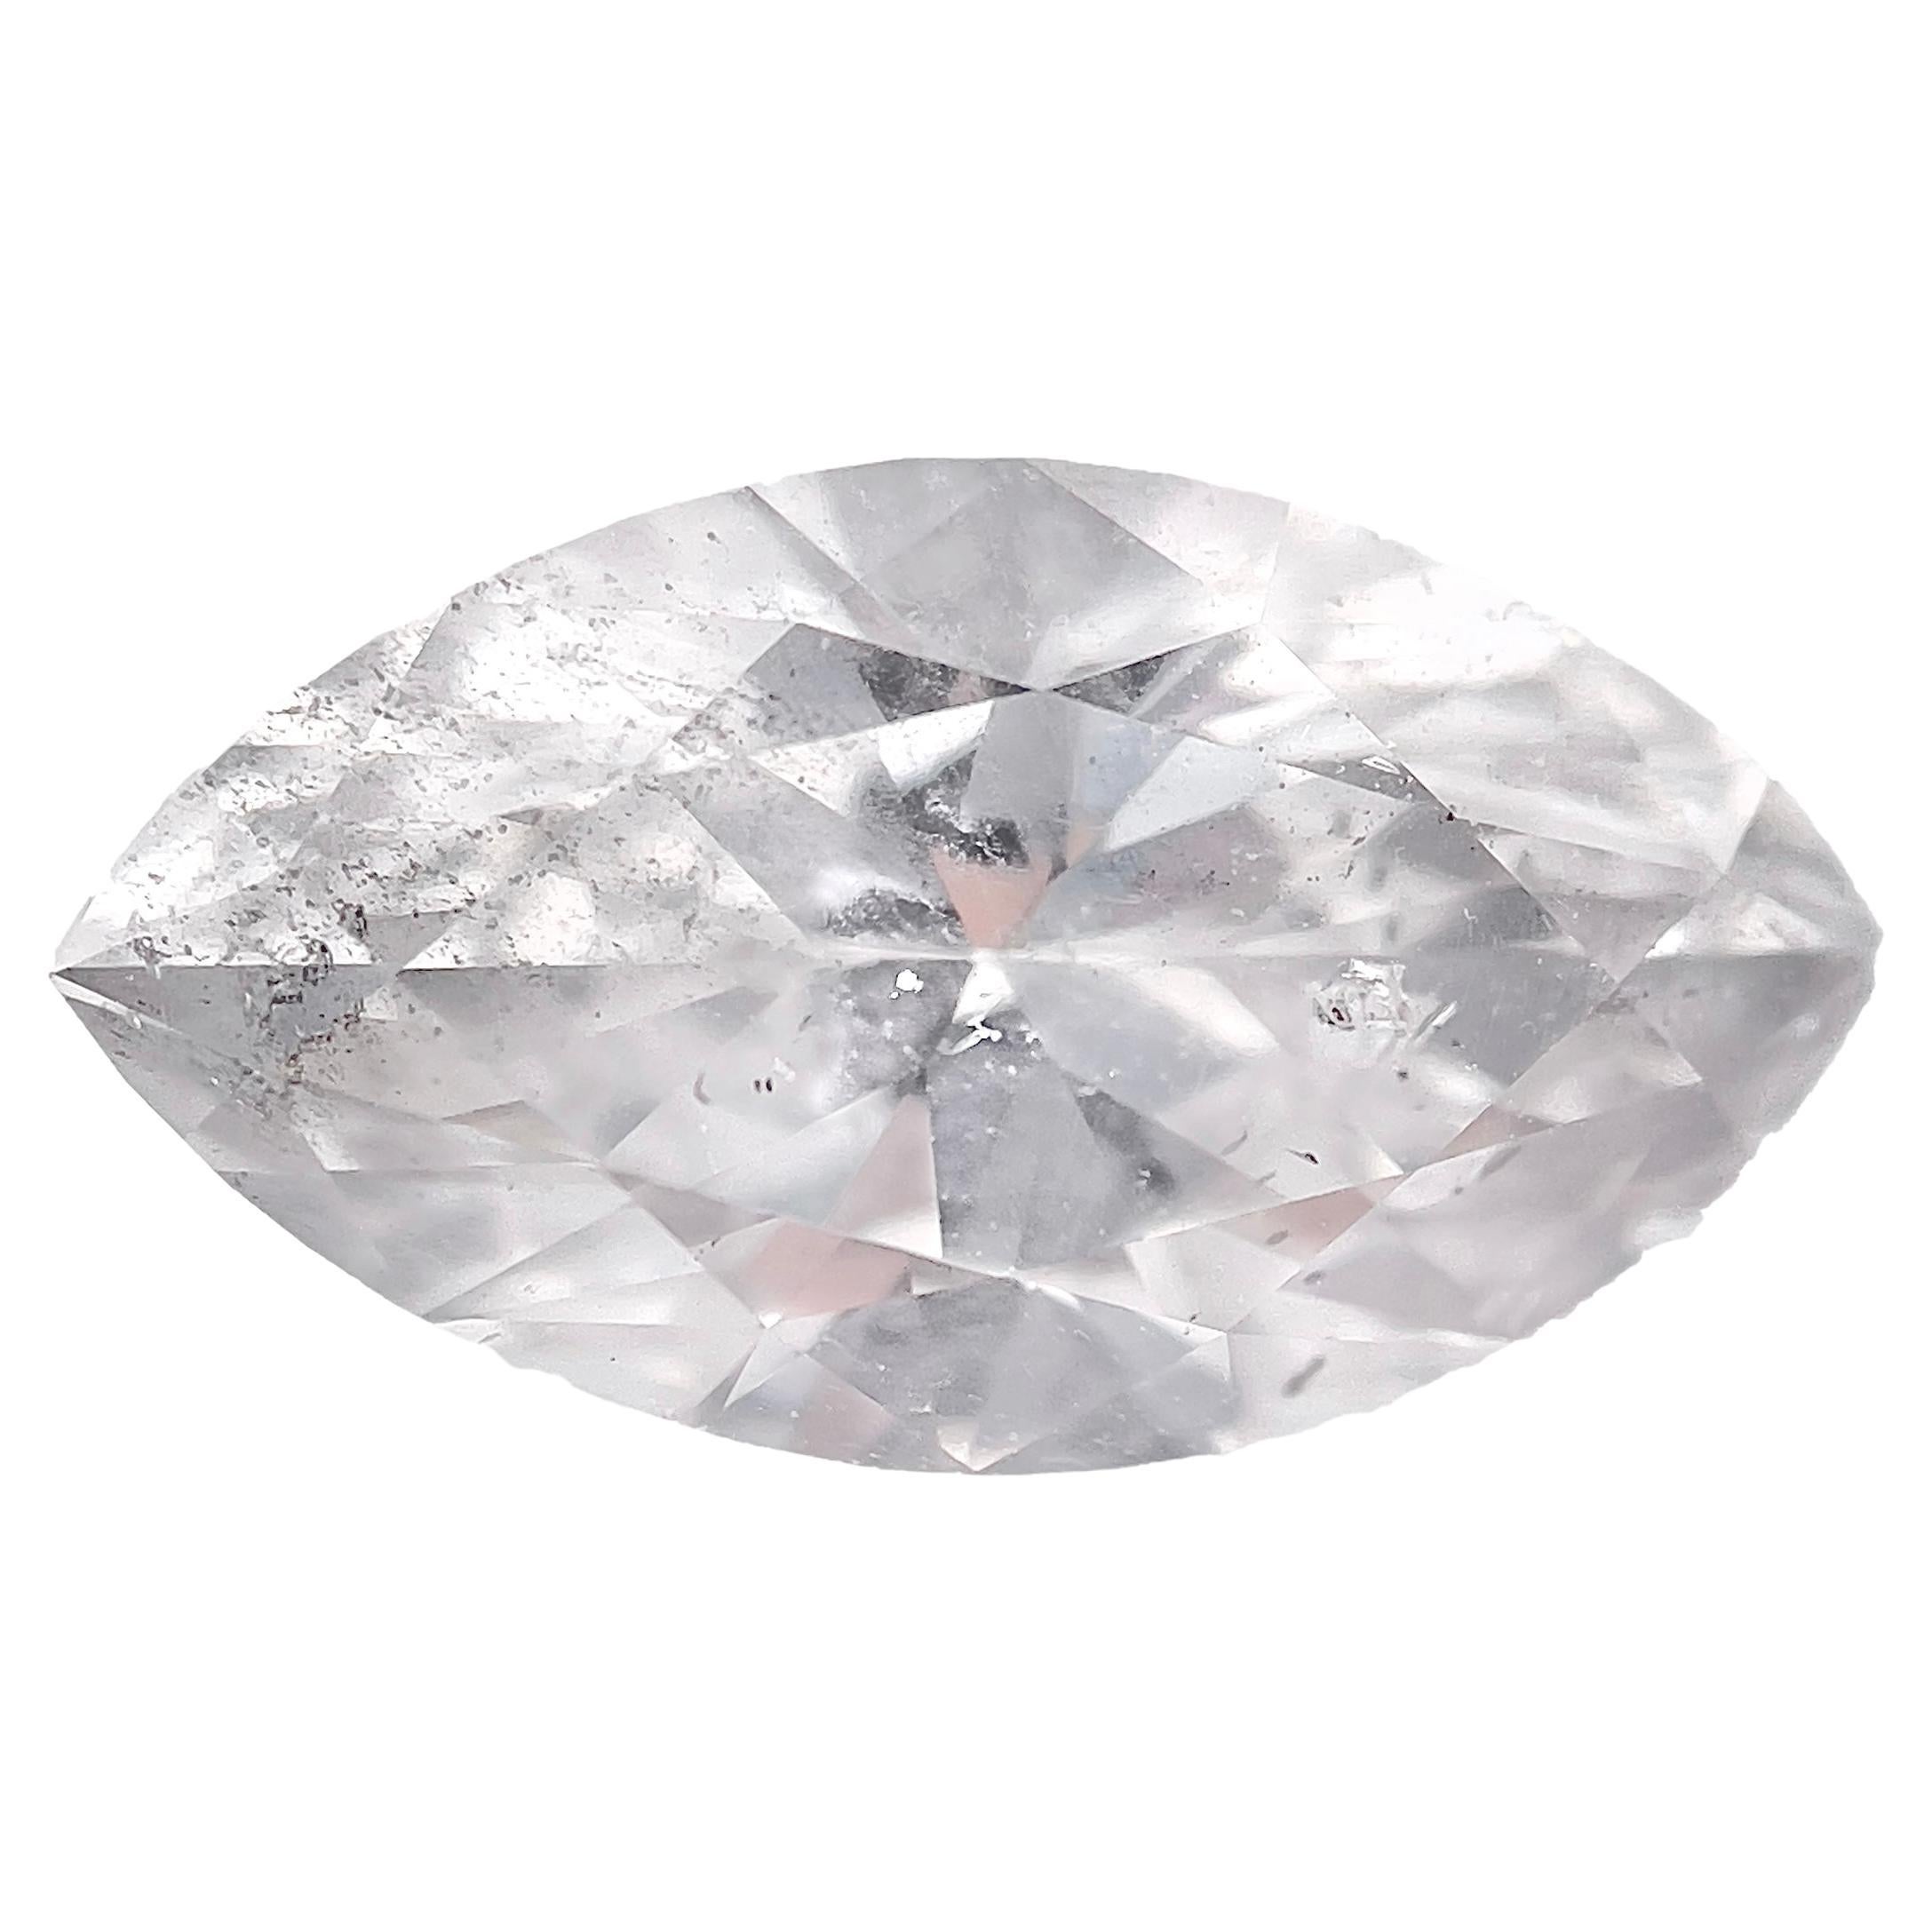 GIA-zertifiziert 1,81 Karat Marquise- Brillant F Farbe I1 Reinheit natürlicher Diamant